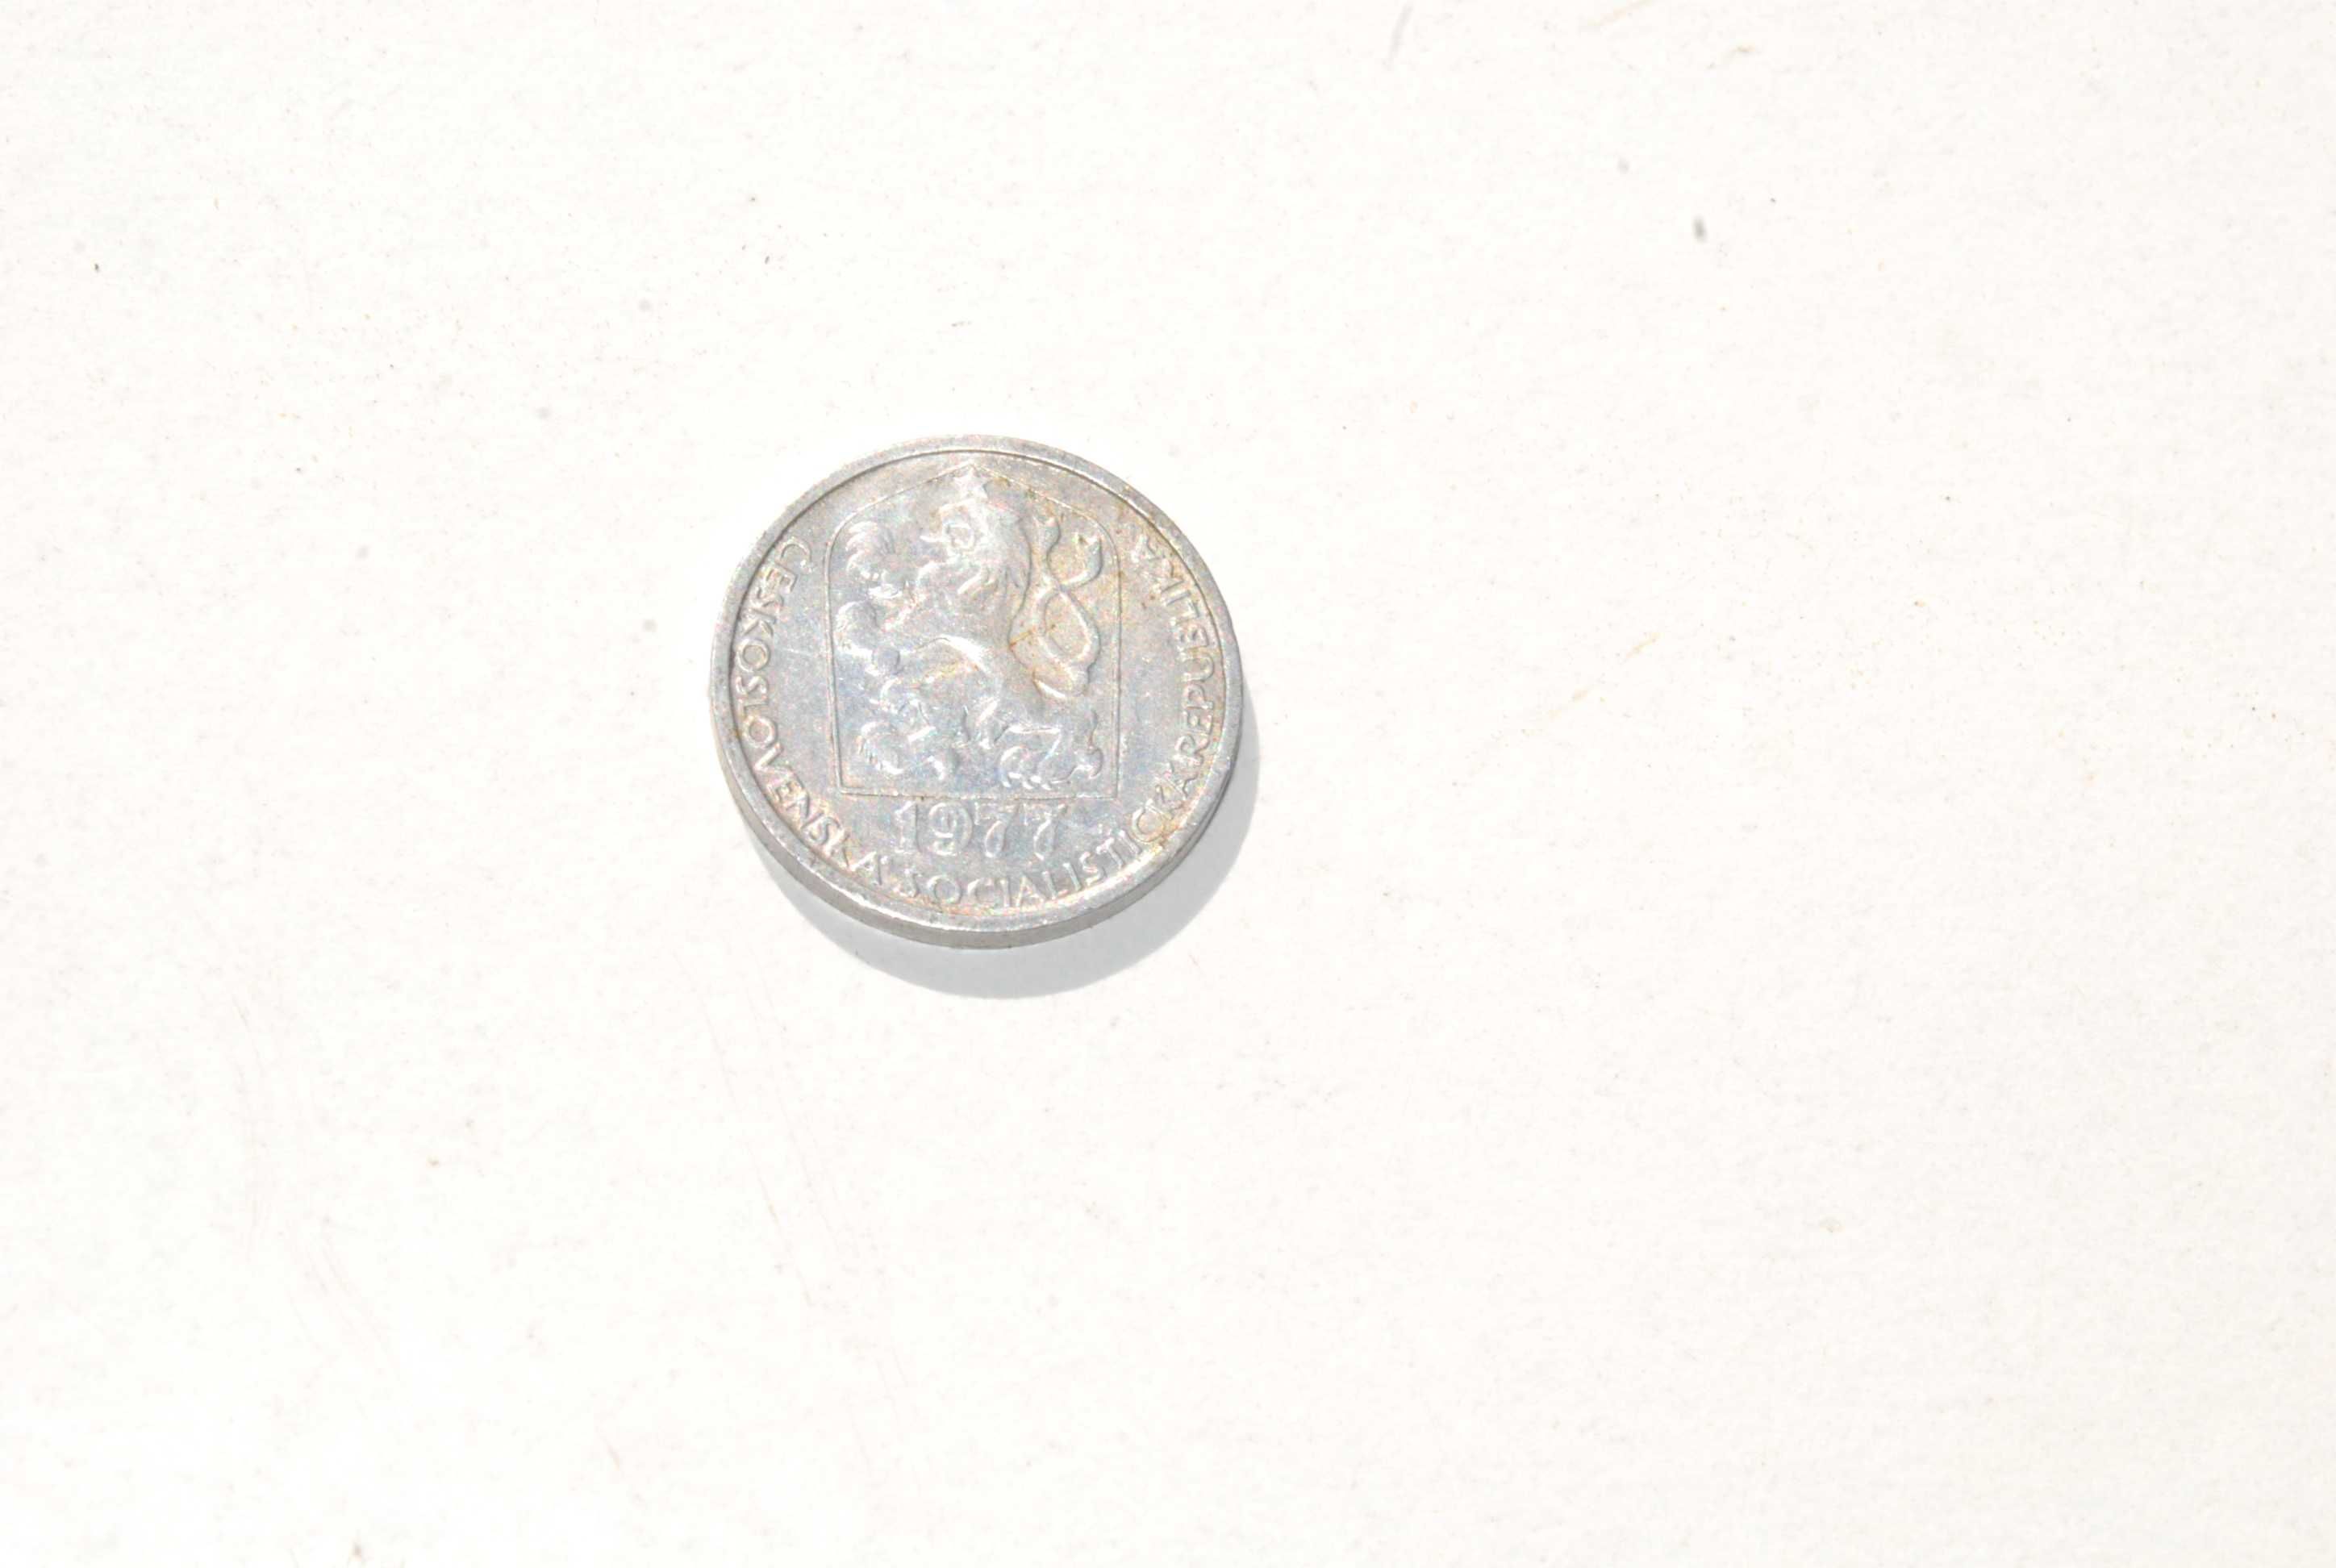 Stara moneta 10 halerzy Czechosłowacja 1977 unikat antyk kolekcjonersk